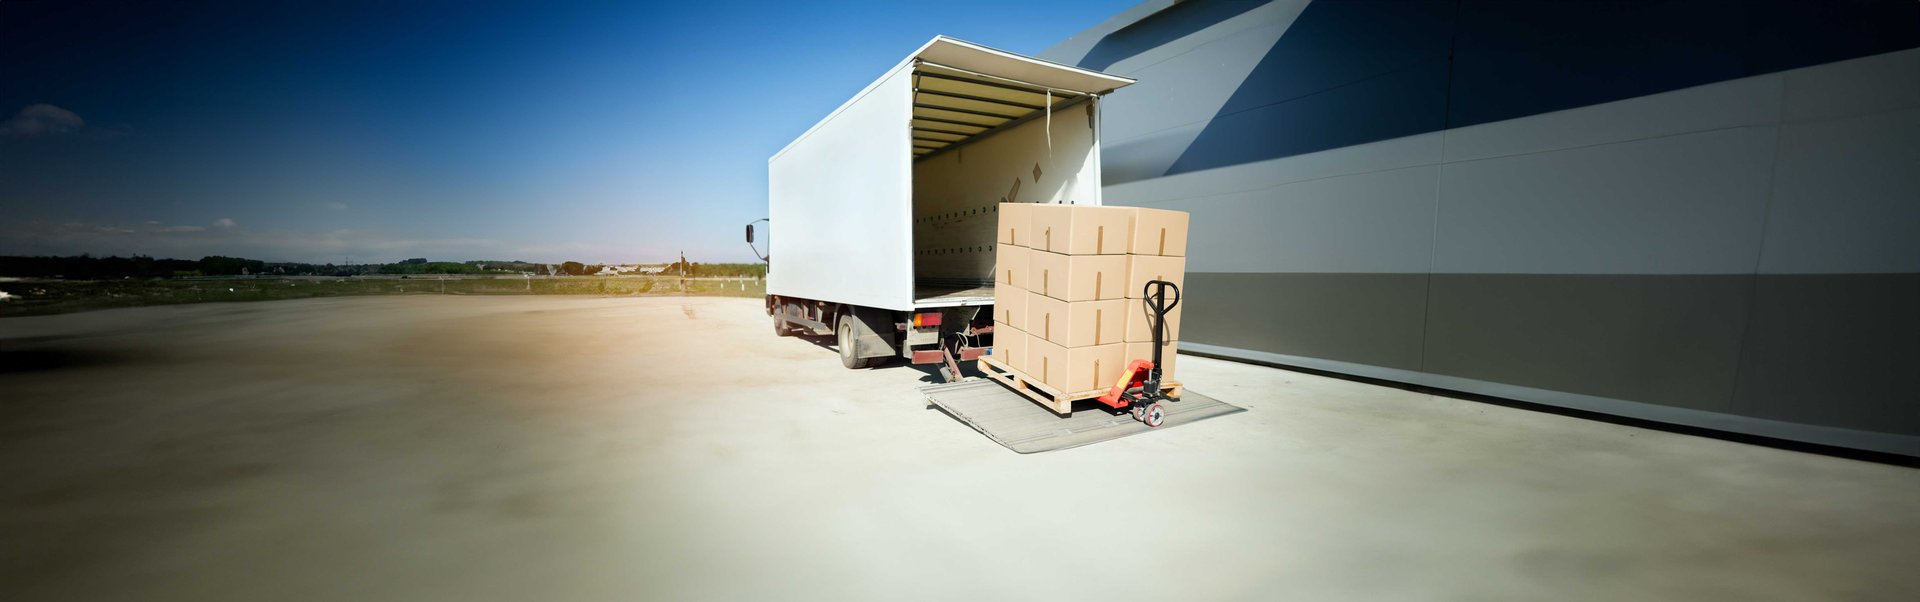 truck-carrying-cargo-for-export-2023-11-27-04-51-11-utc-1